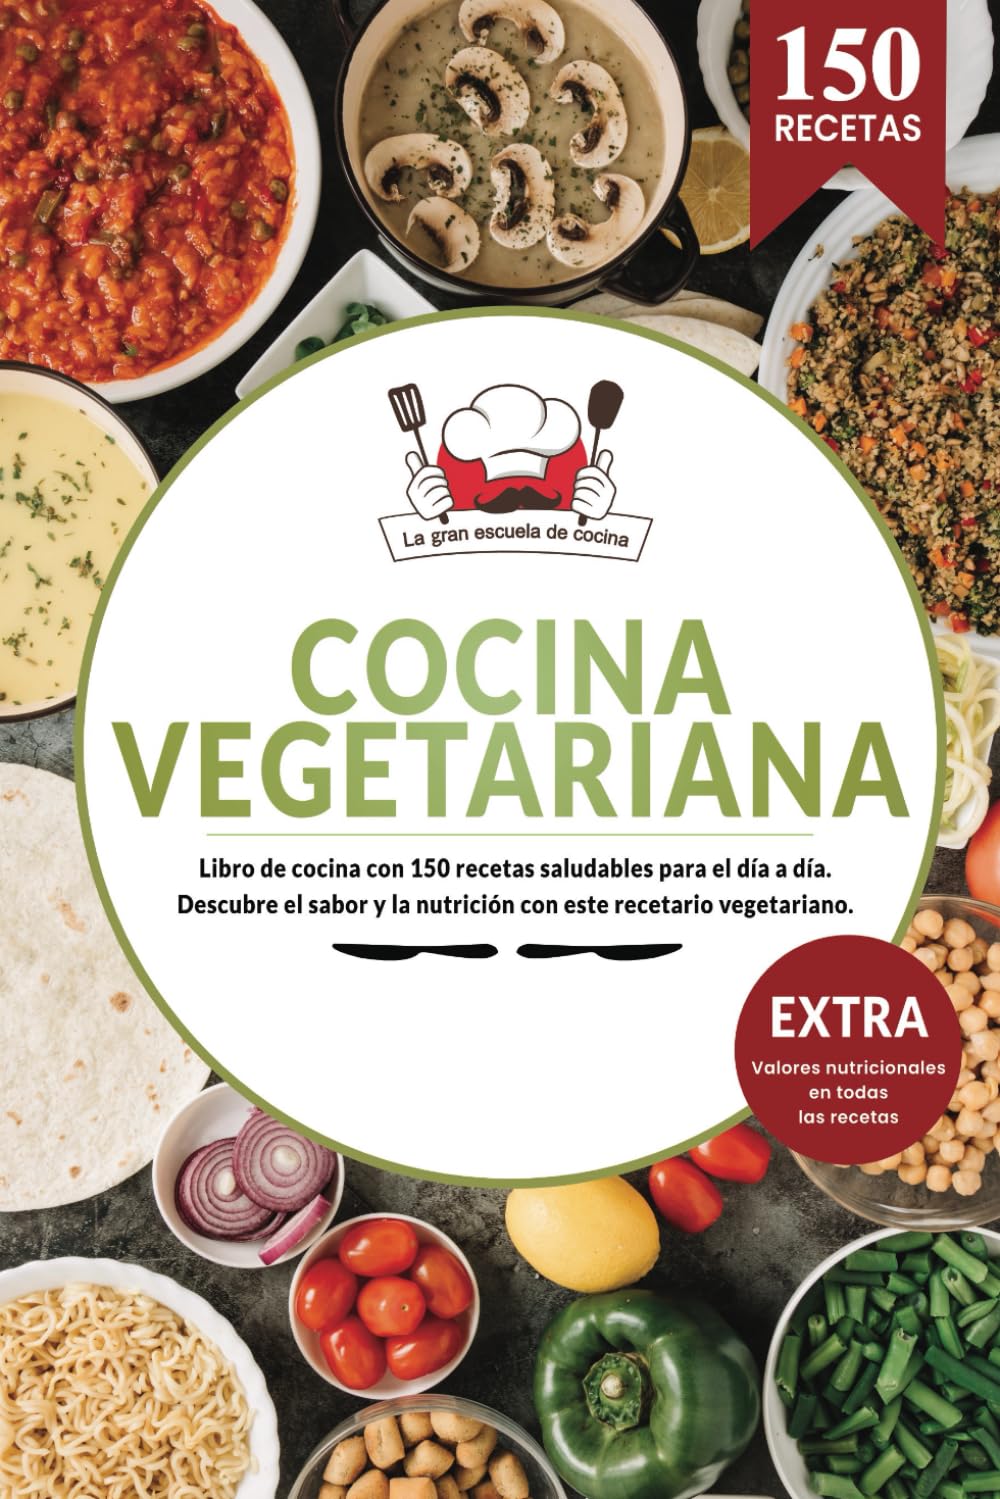 Cocina Vegetariana | Libro de cocina con 150 recetas saludables para el día a día. Descubre el sabor y la nutrición con este recetario vegetariano.: ... en todas las recetas (Spanish Edition)